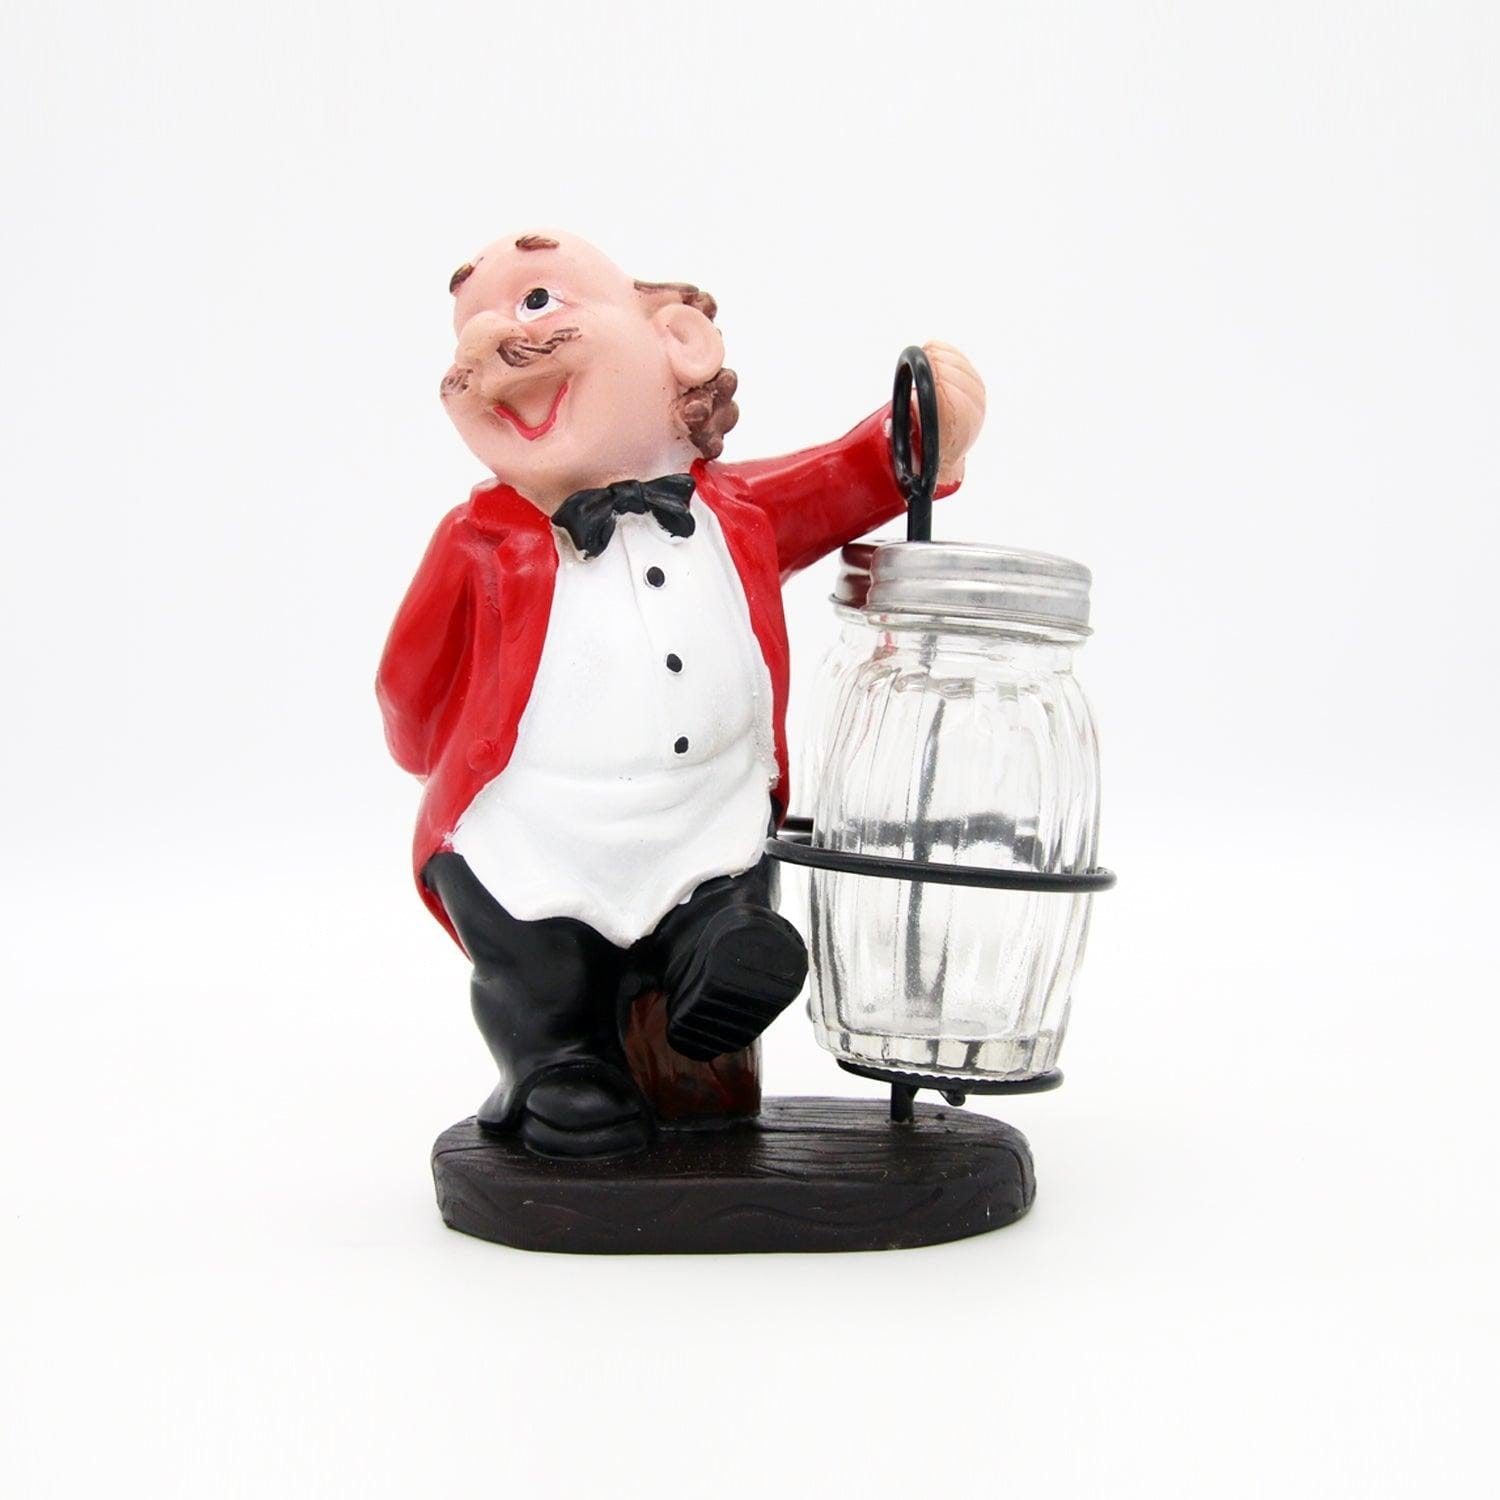 Whacky Waiter Figurine Resin Salt & Pepper Shakers Holder Set (Red Coat)